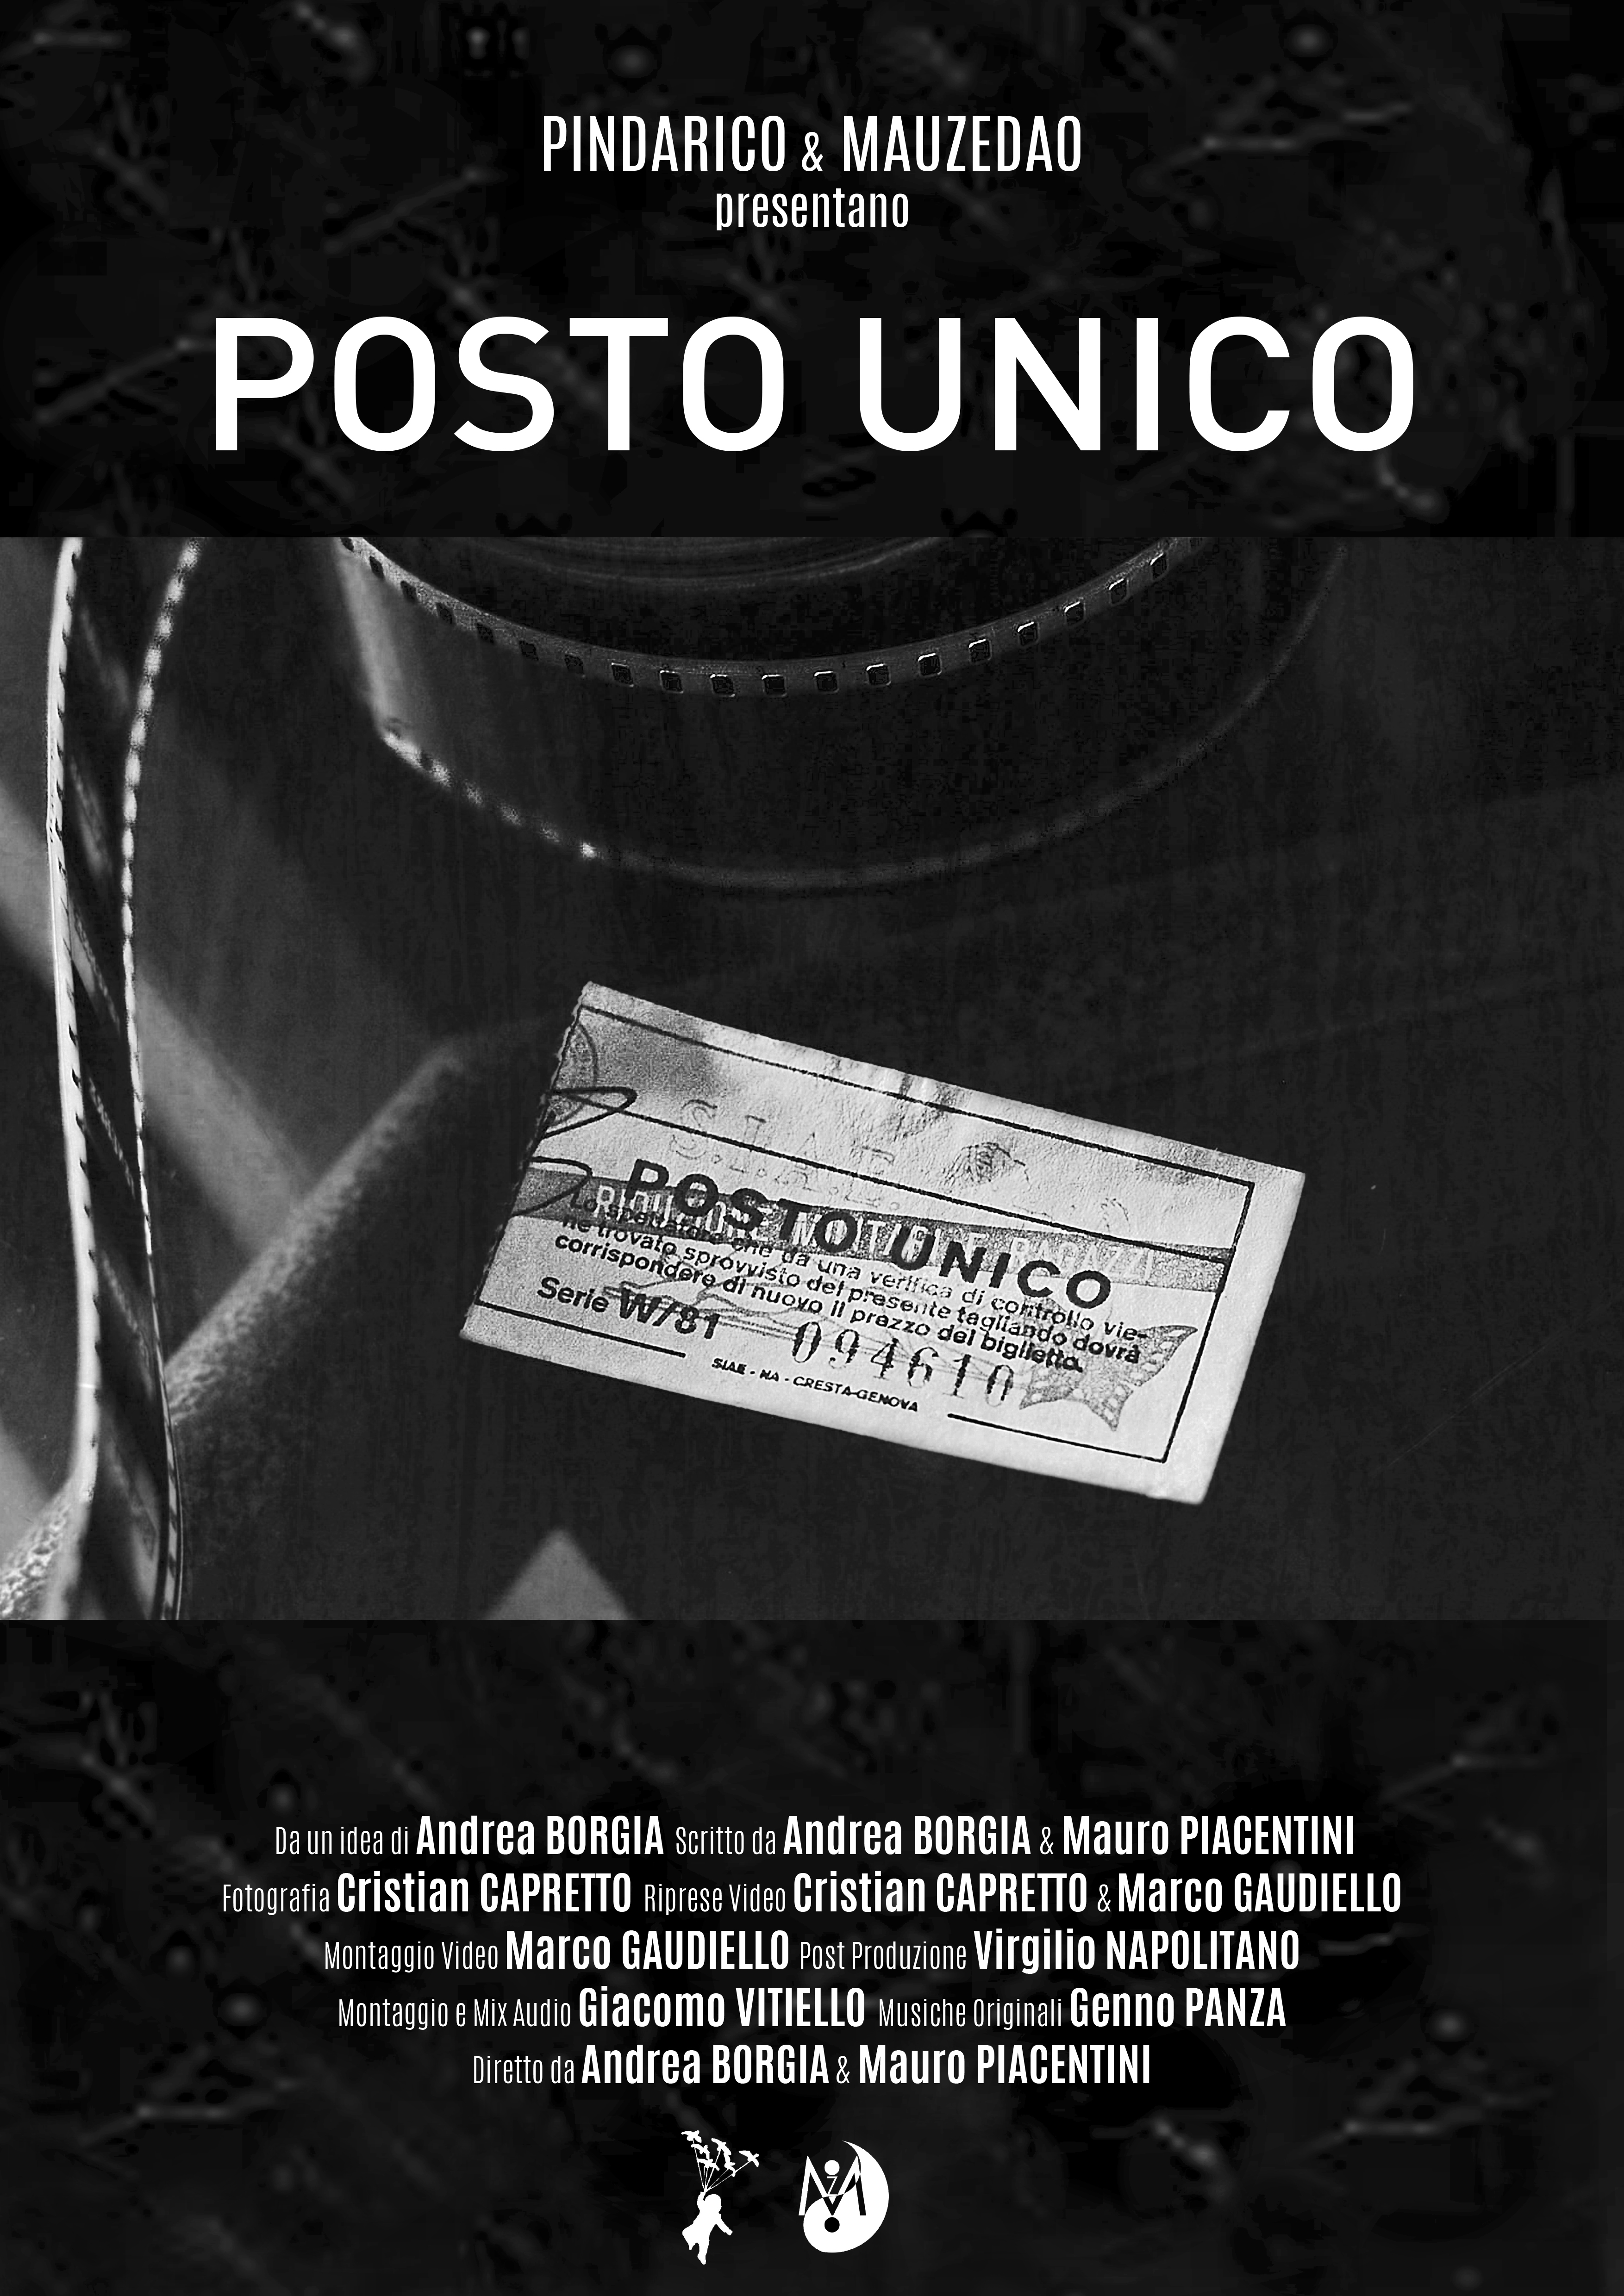 Il Documentario “Posto Unico” di Andrea Borgia e Mauro Piacentini debutta a Napoli venerdì 8 dicembre al Teatro Galleria Toledo